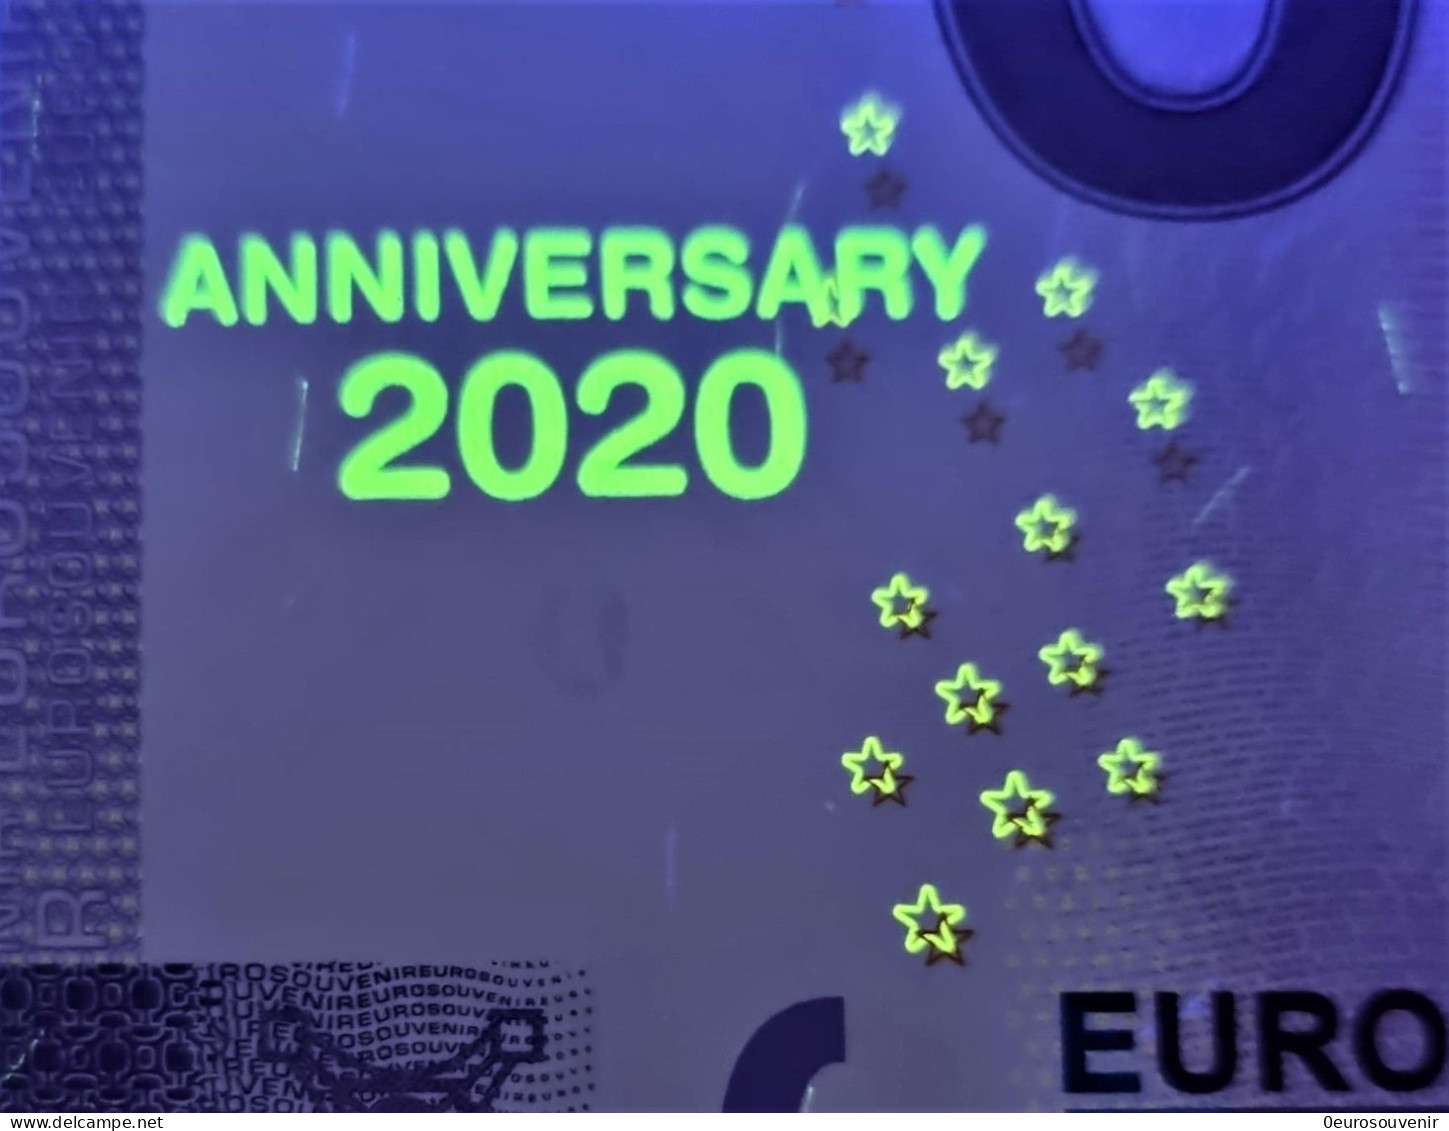 0-Euro XEMP 1 2020 EISENHÜTTENSTADT 1950-2020 - 70 JAHRE WERK UND STADT Set NORMAL+ANNIVERSARY - Private Proofs / Unofficial